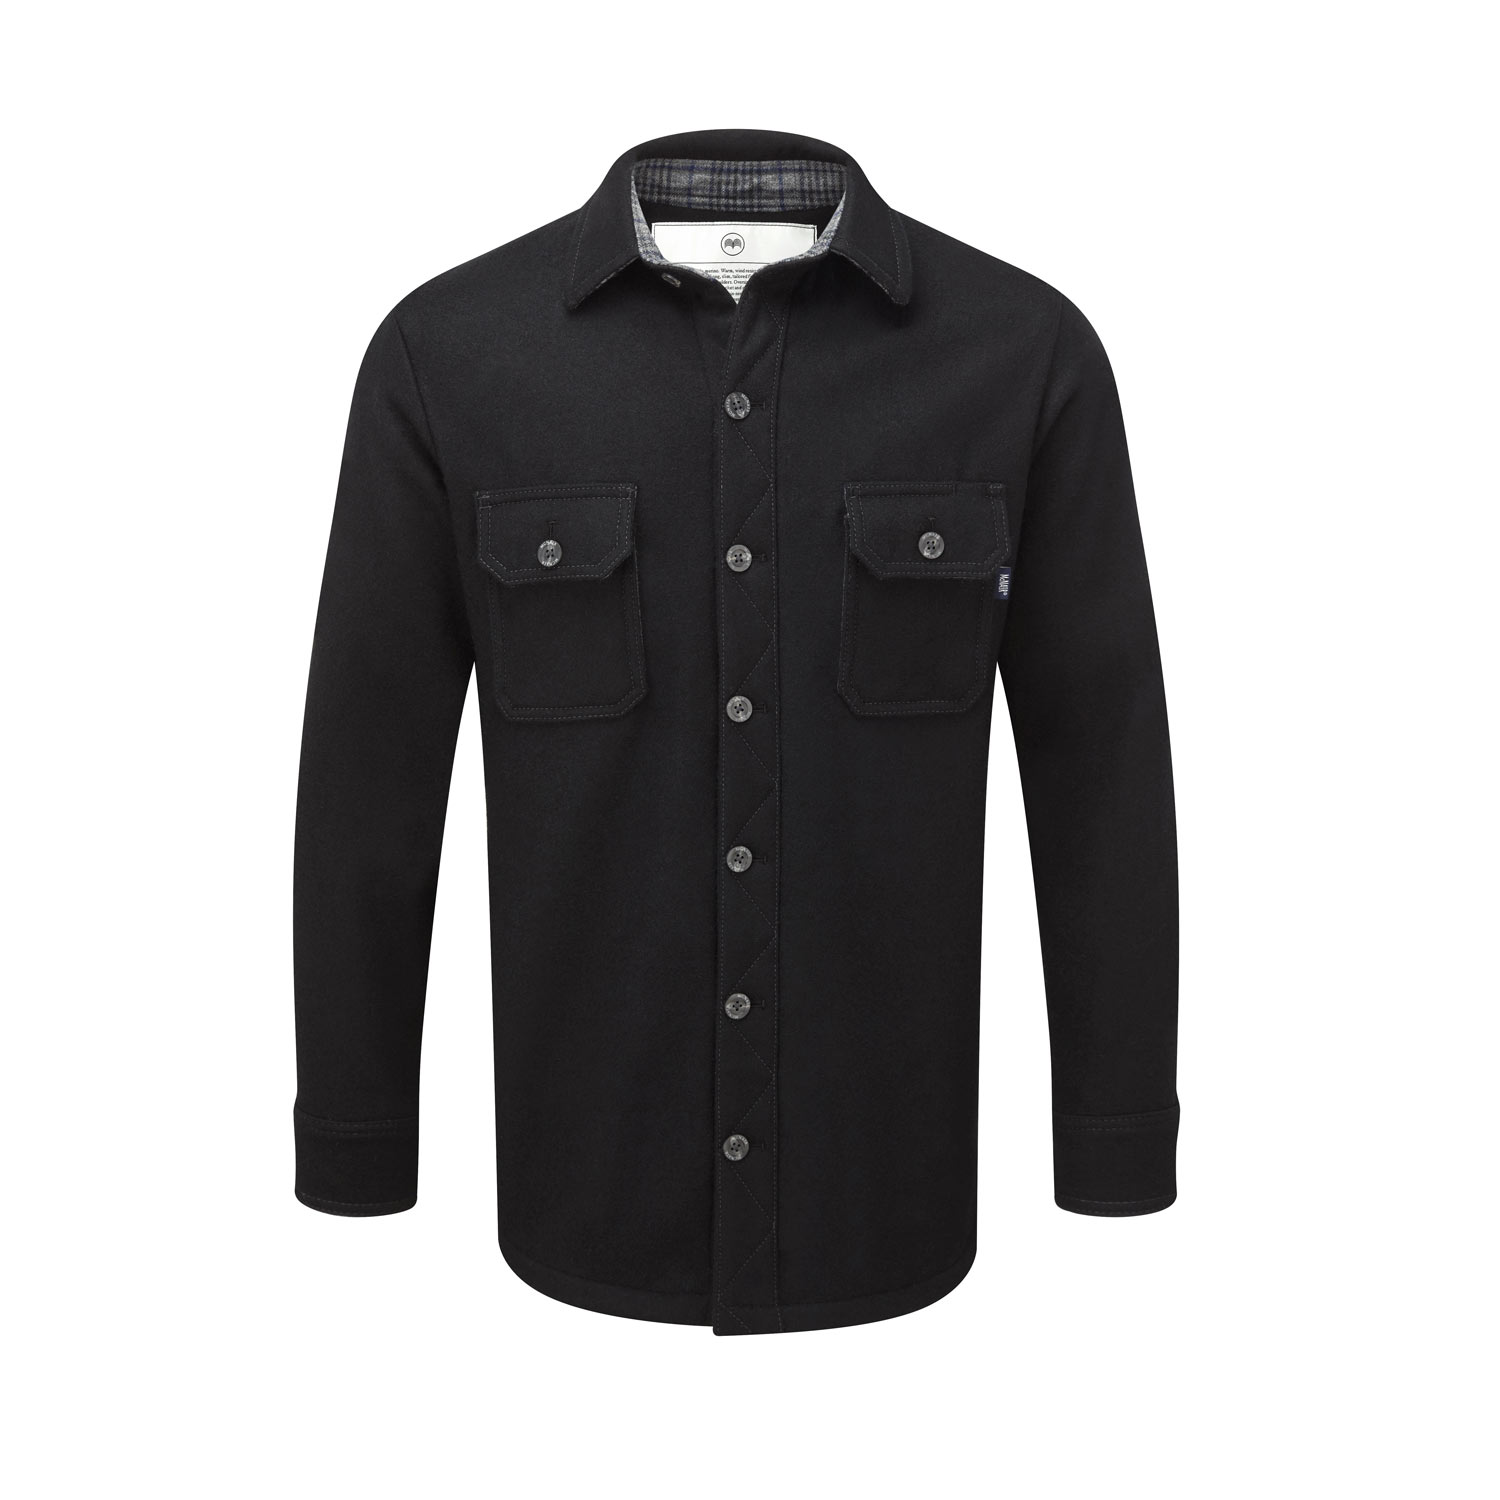 Men’s heavy weight merino shirt in black